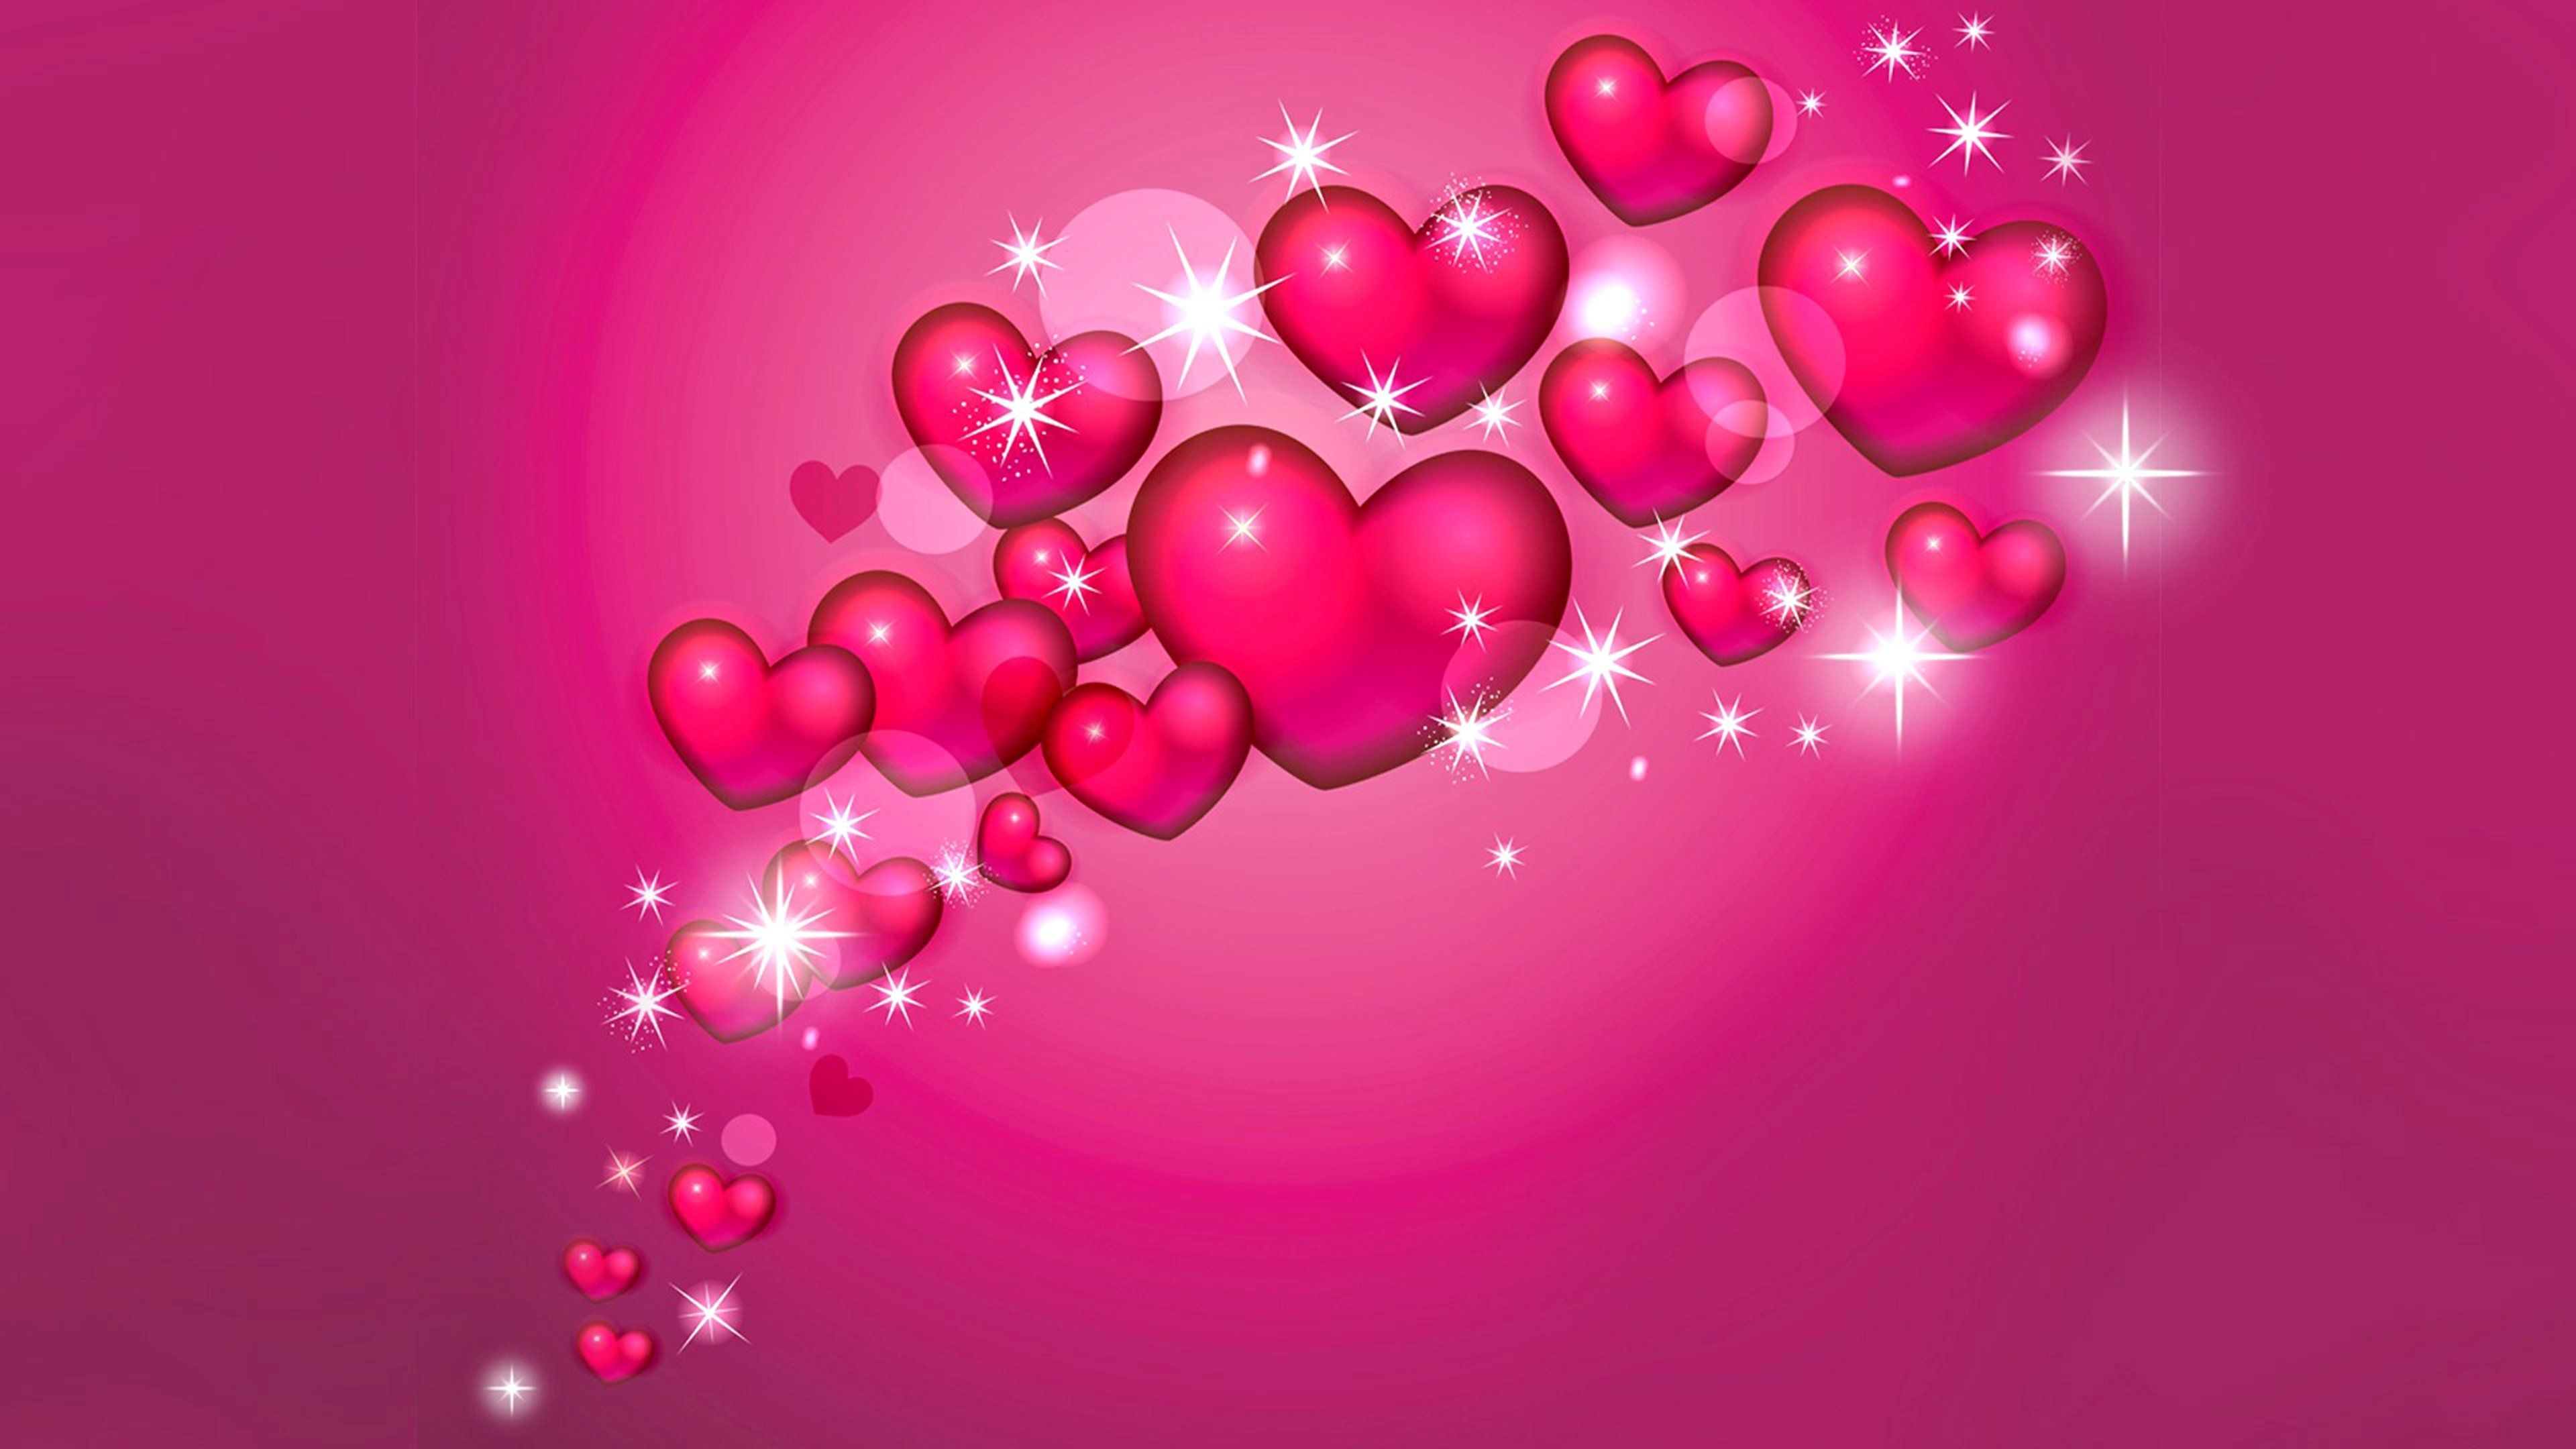 3840x2160 Pink Heart Desktop Wallpapers Top Free Pink Heart Desktop Backgrounds